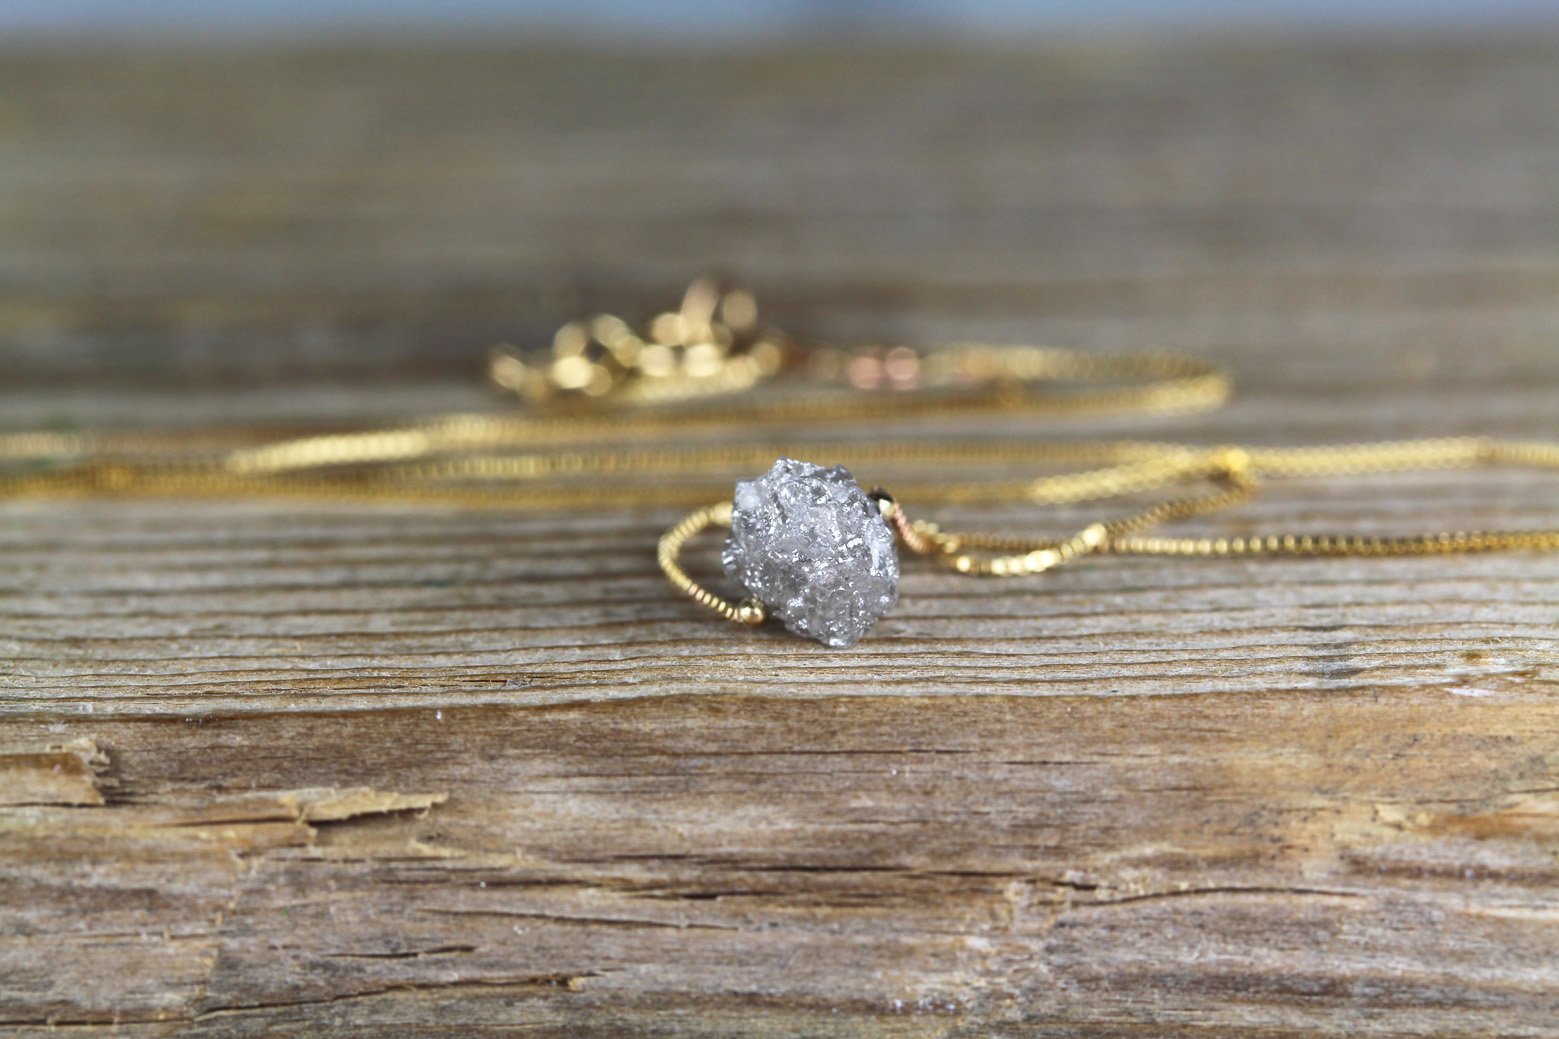 Unique Pink Rough Diamond Bead Necklace with Silver Clasp | DeKulture